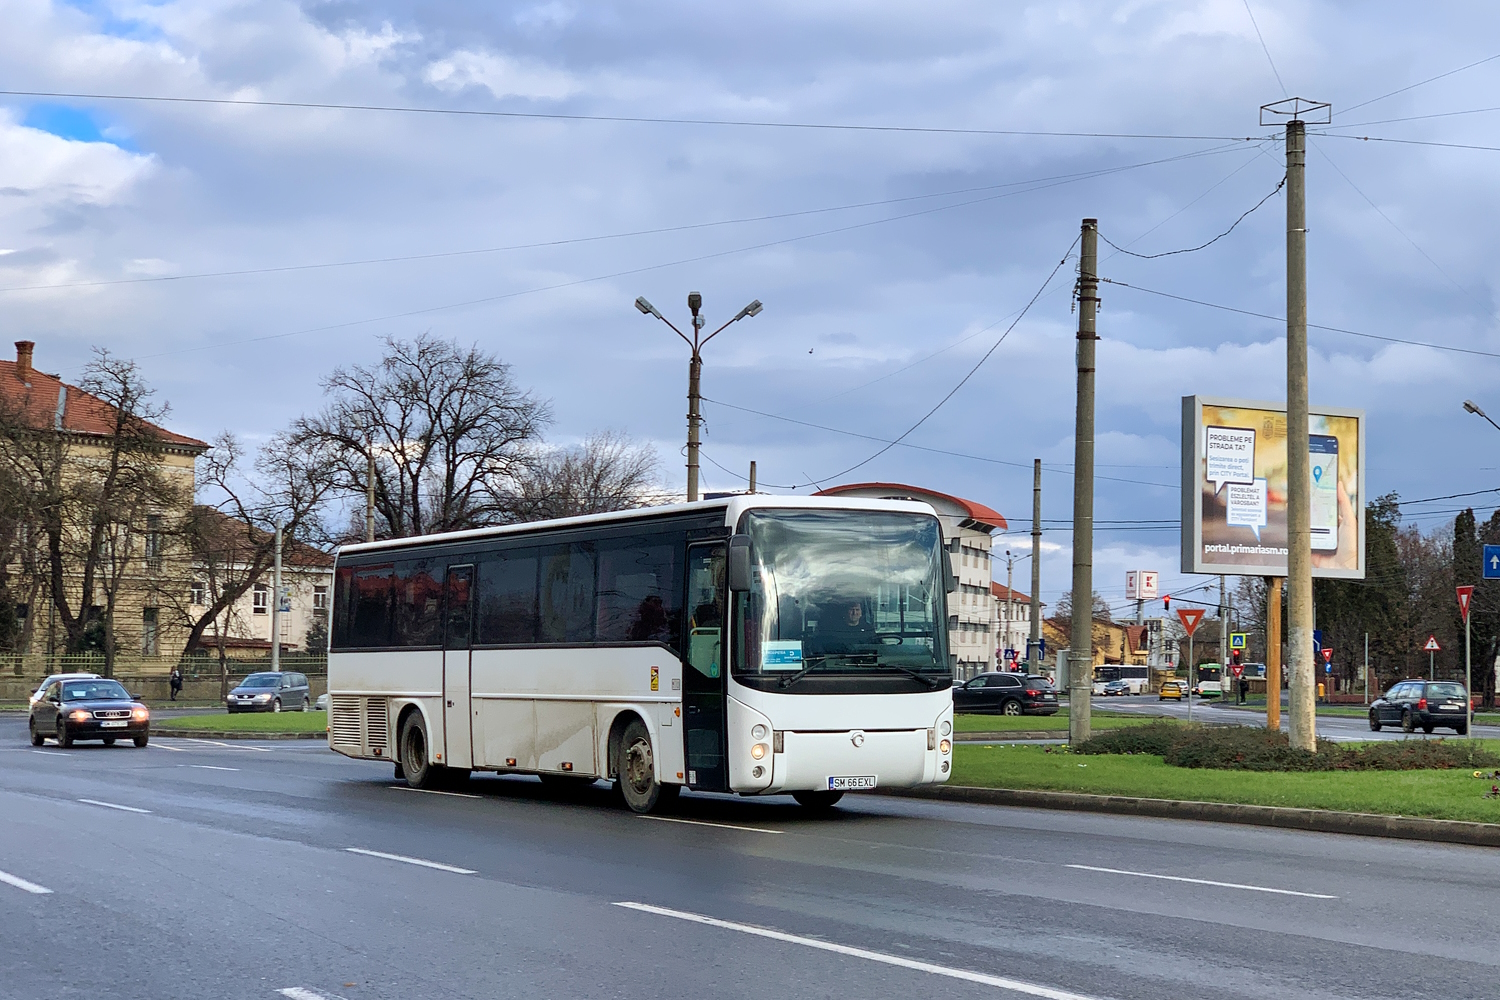 Satu Mare, Irisbus Ares 12M č. SM 66 EXL